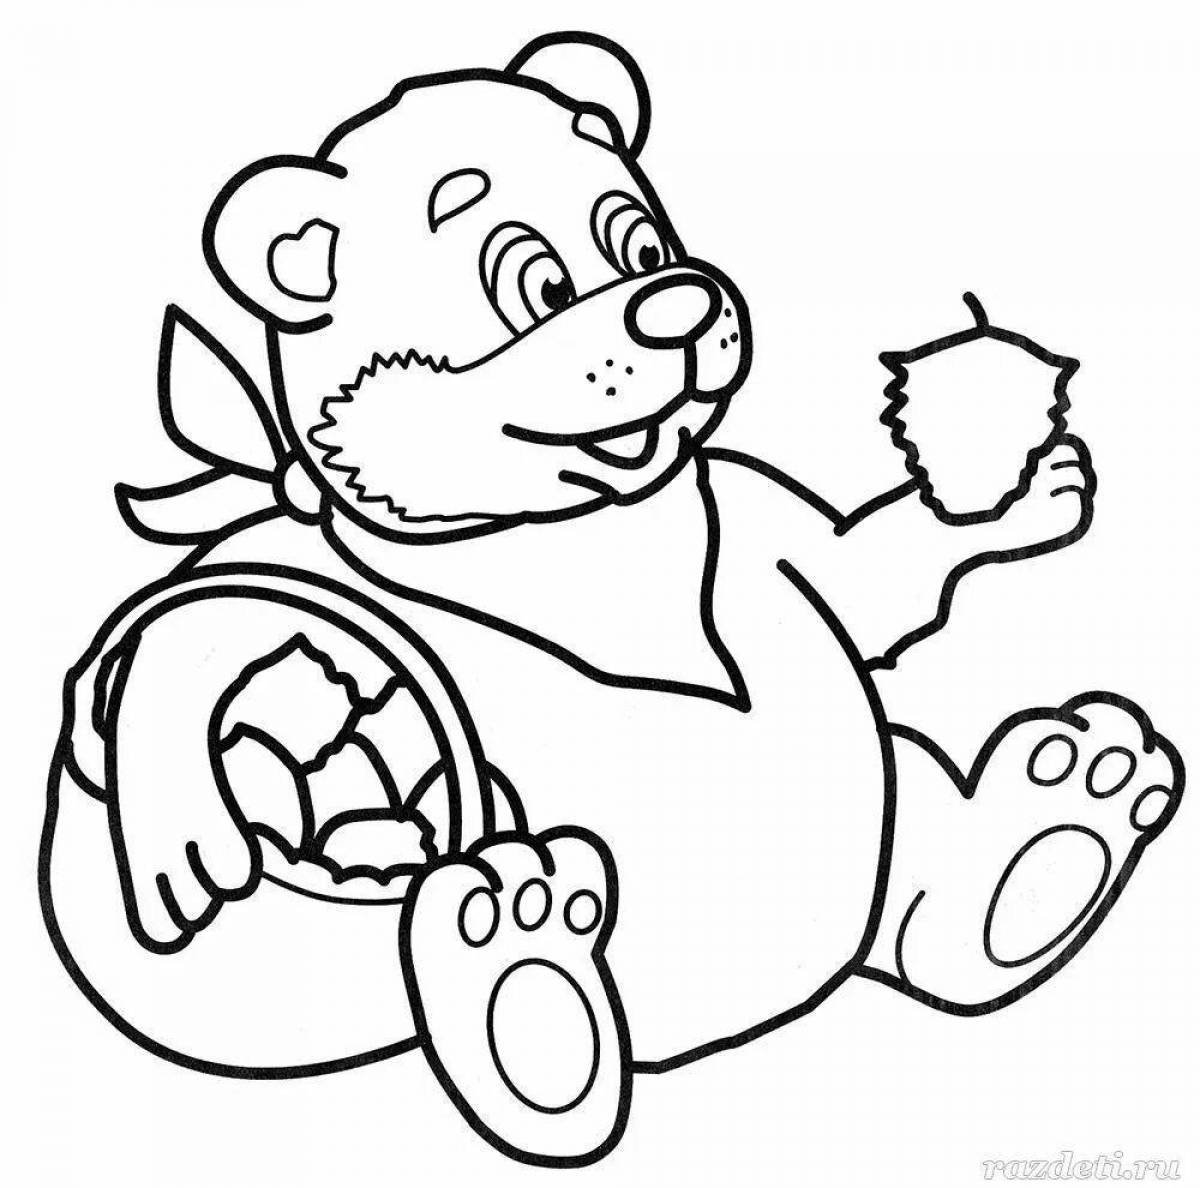 Медвежонок раскраска для детей. Медведь раскраска для детей. Раскраска "мишки". Медведь для раскрашивания детям. Раскраски для детей 3 года мишки